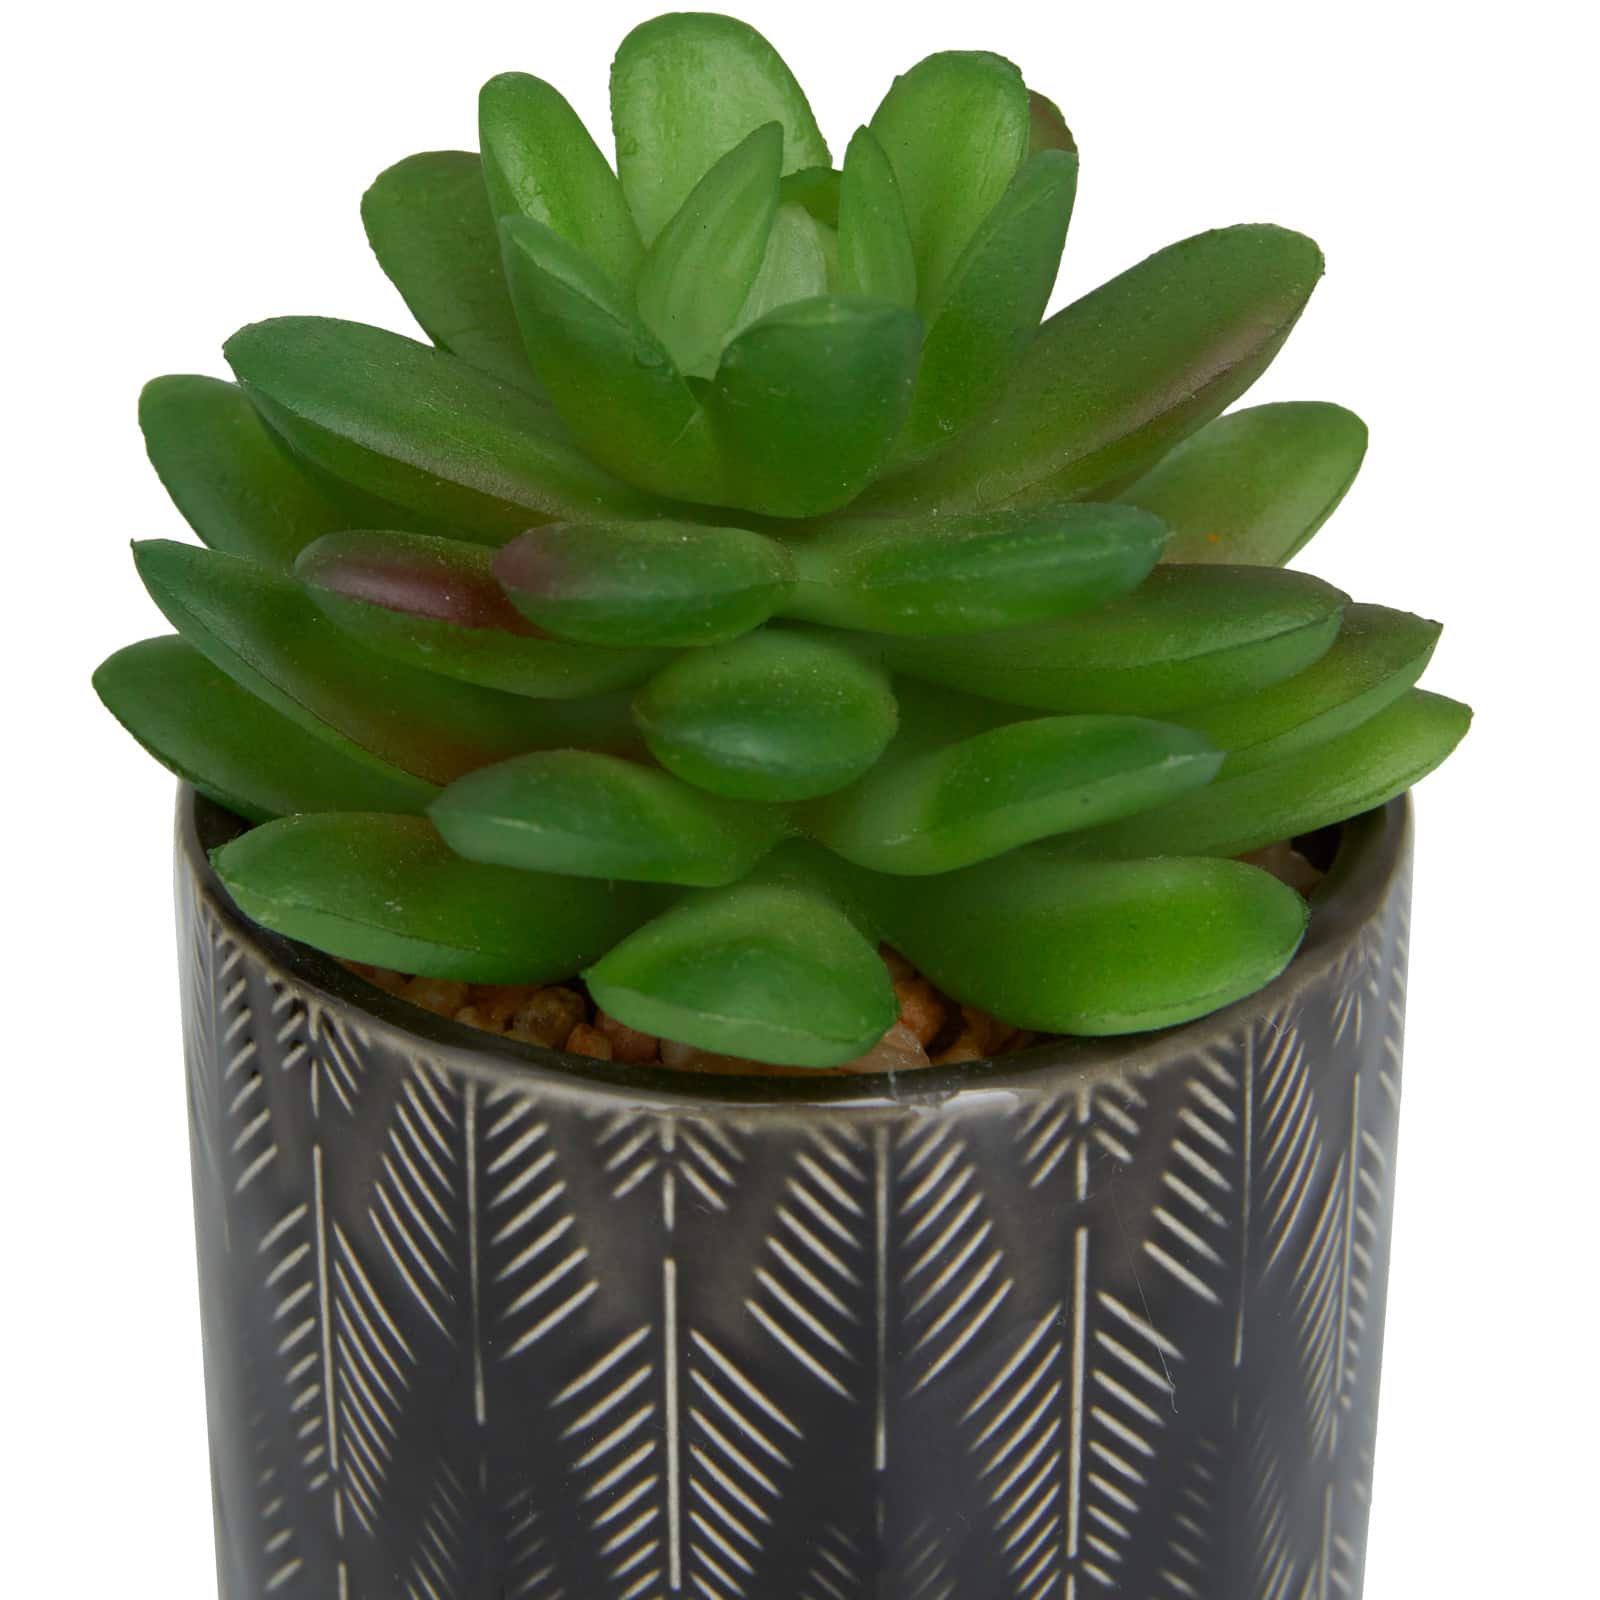 Novogratz Green Faux Foliage Small Succulent Artificial Plant with Leaf Patterned Pot Set